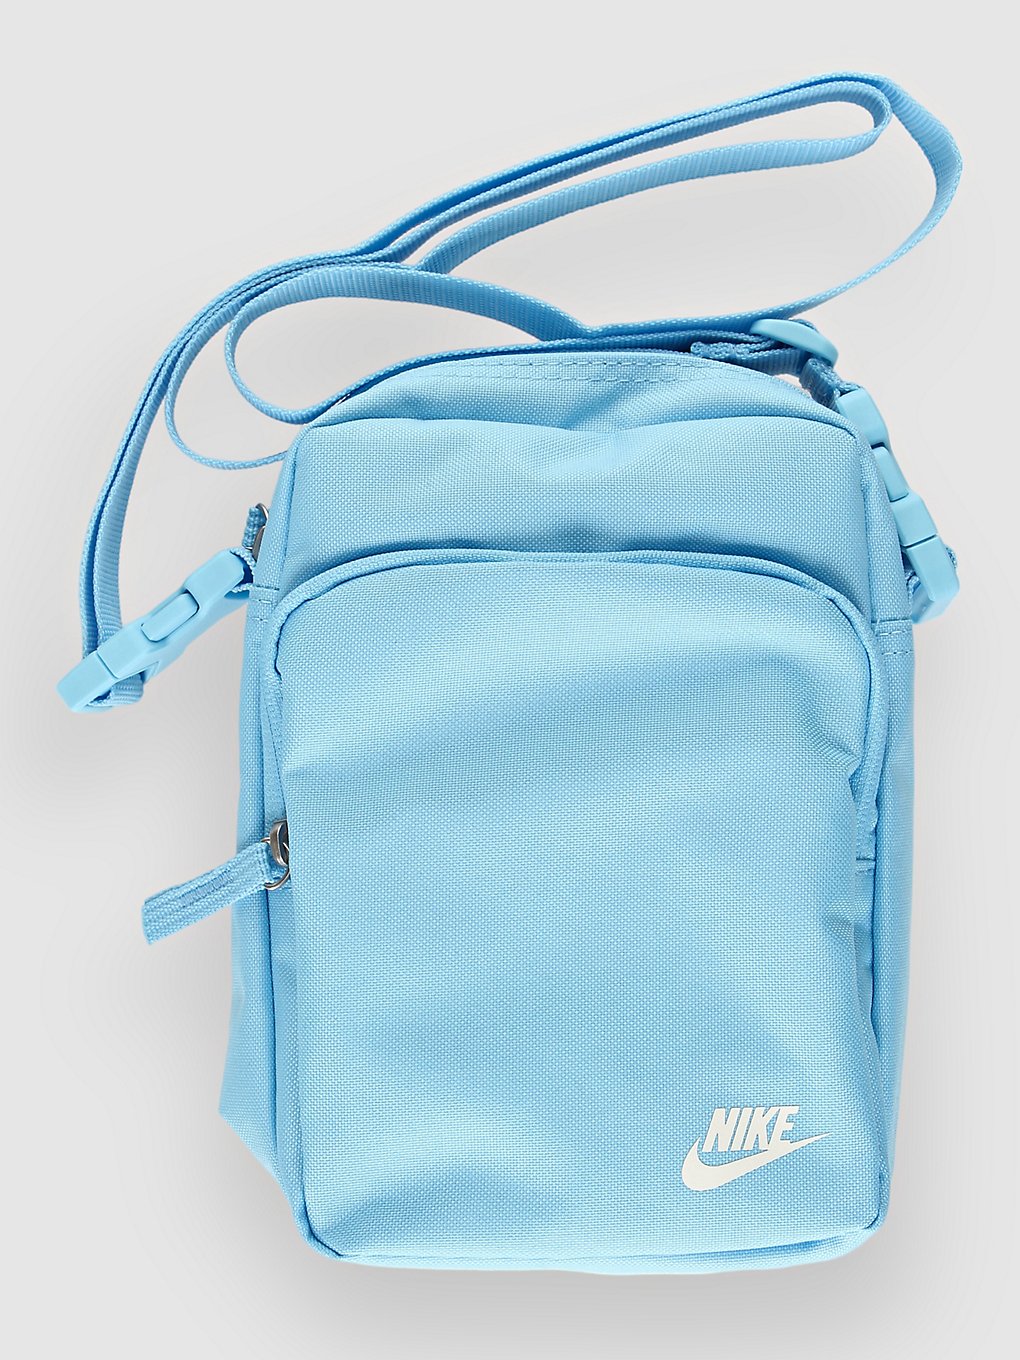 Nike Nk Heritage Crossbody Bag aquarius bl